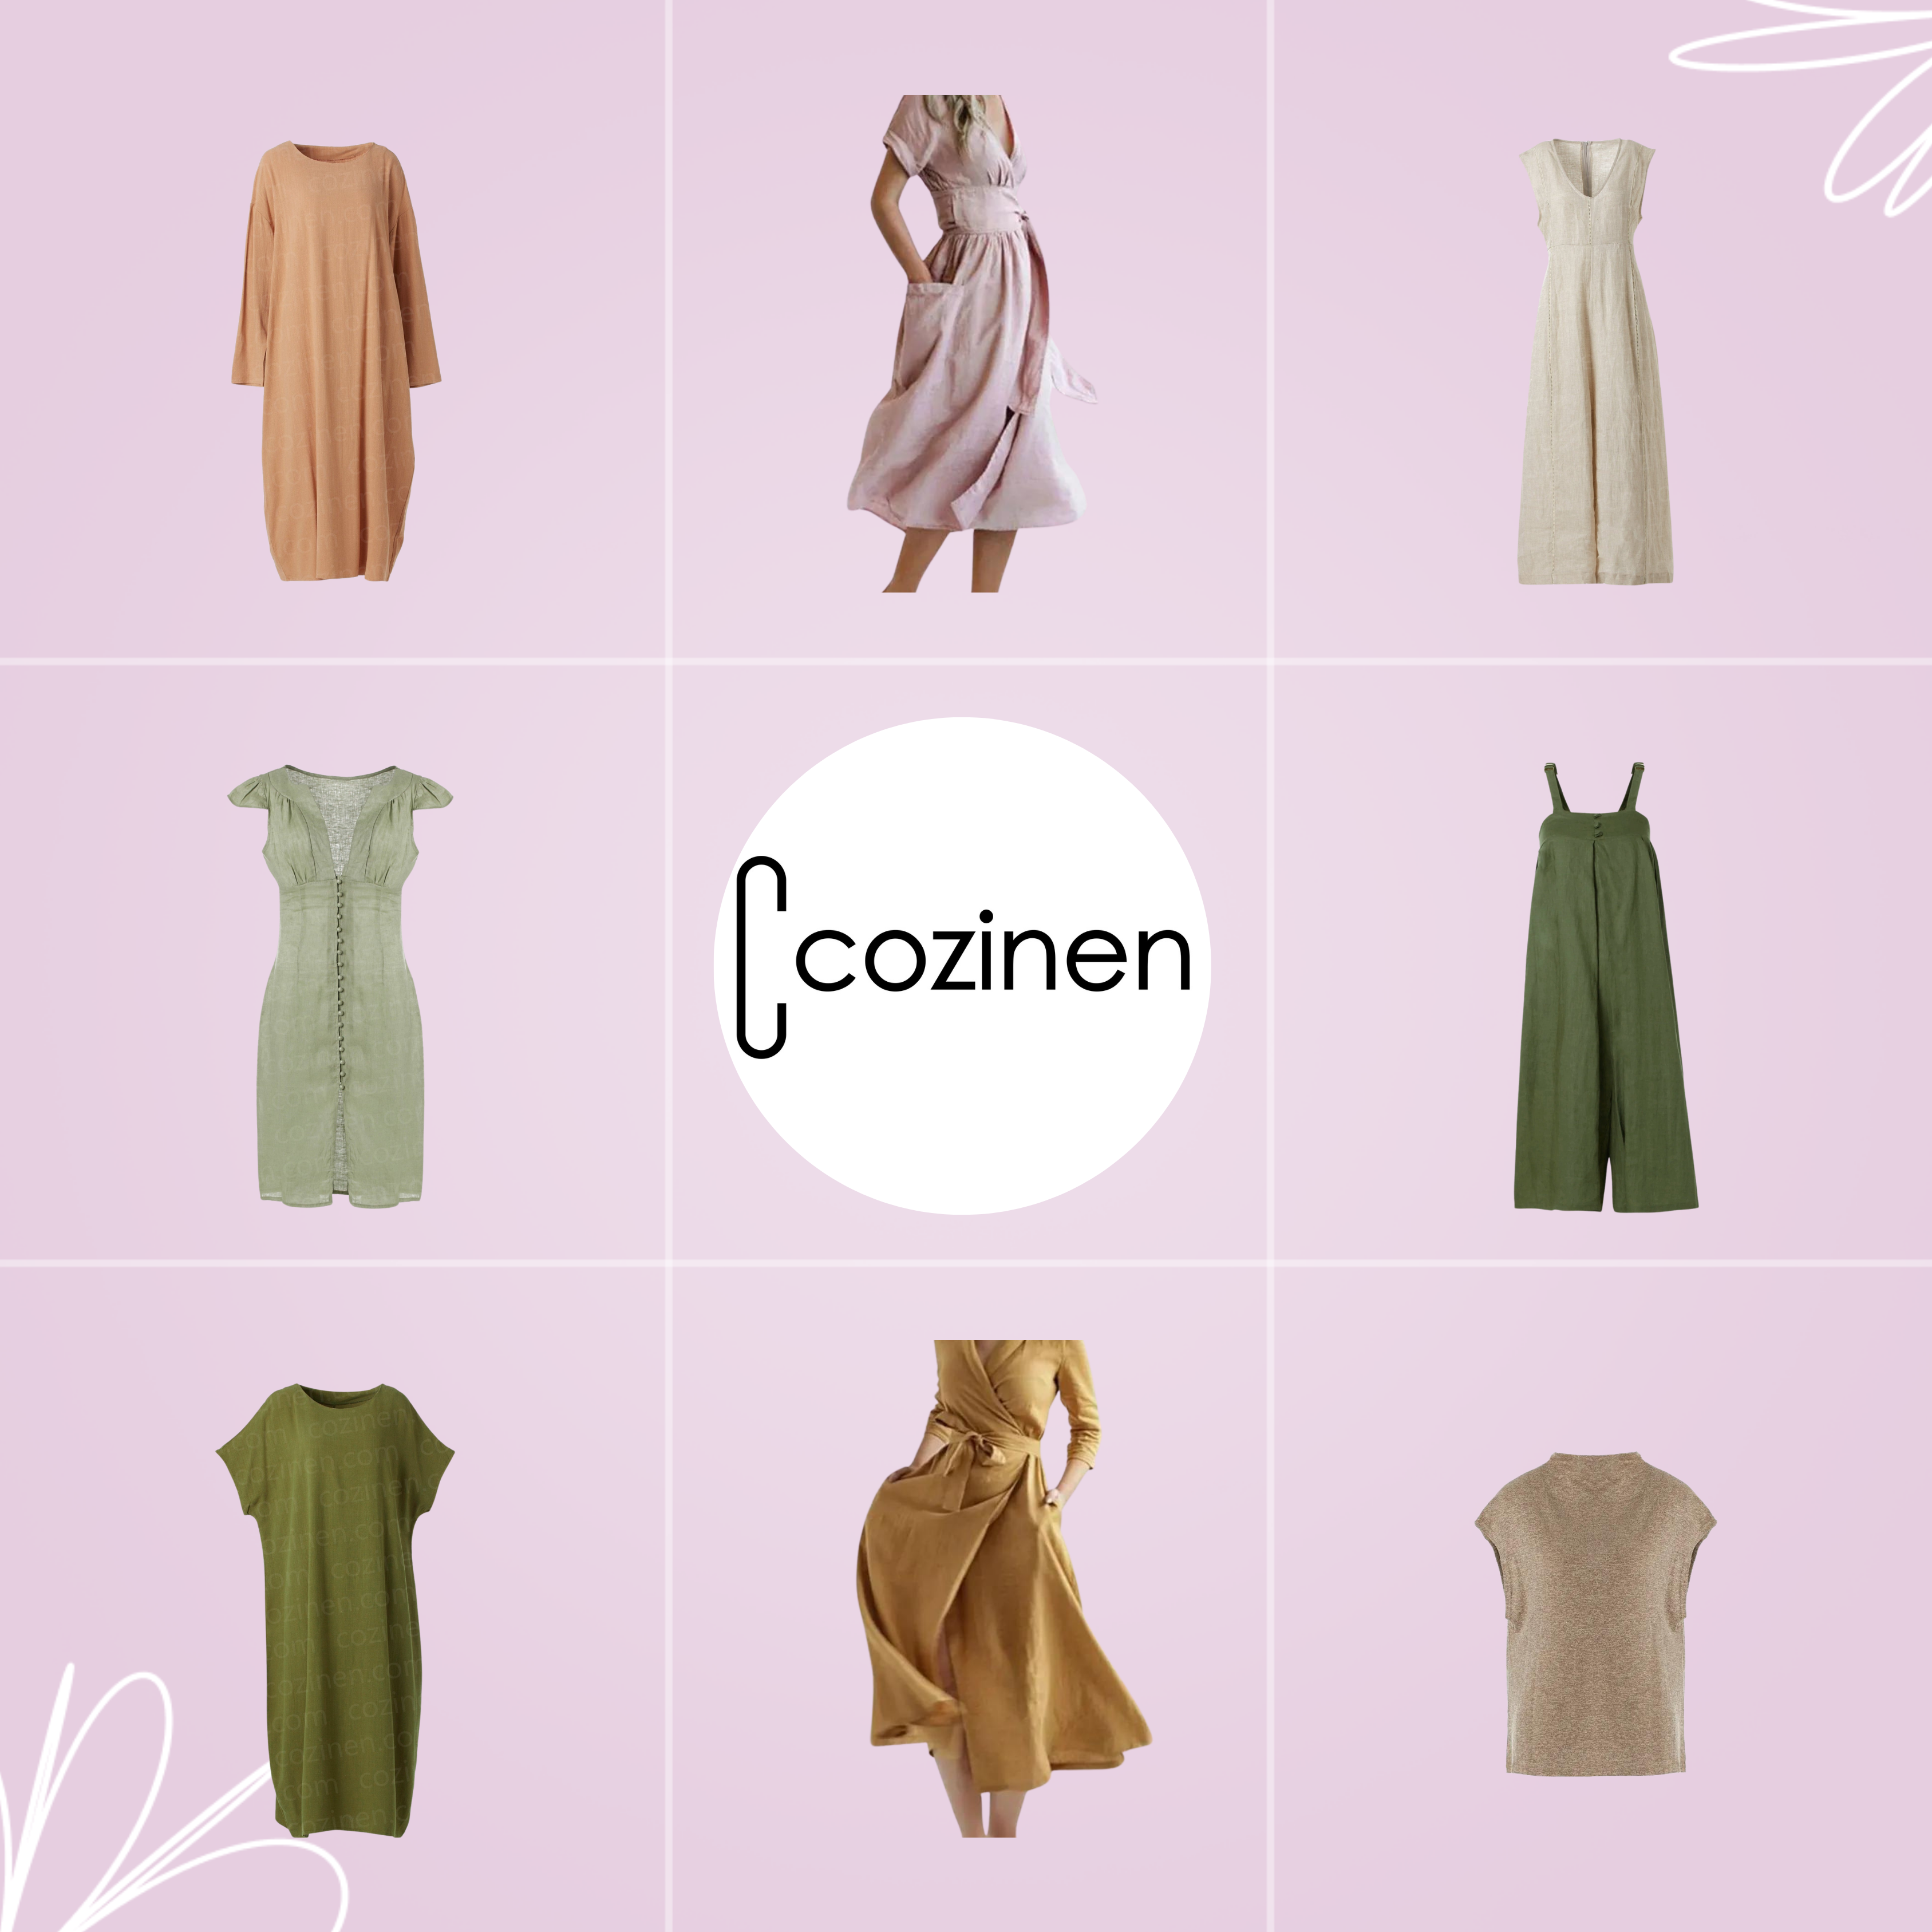 Brand image for Cozinen